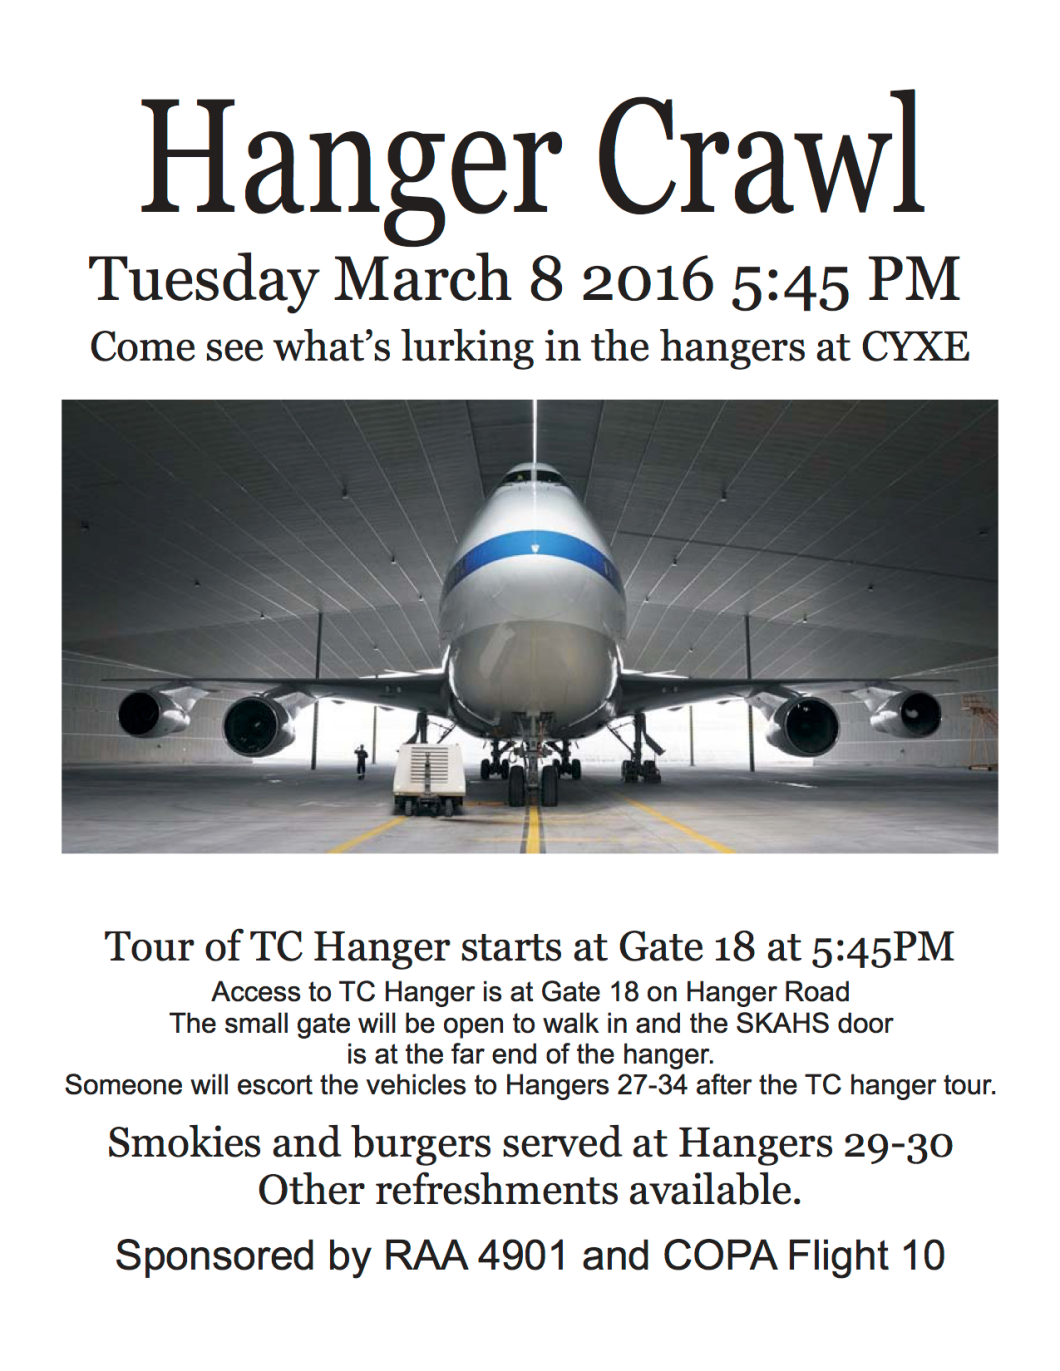 Hanger Crawl poster 03-08-16